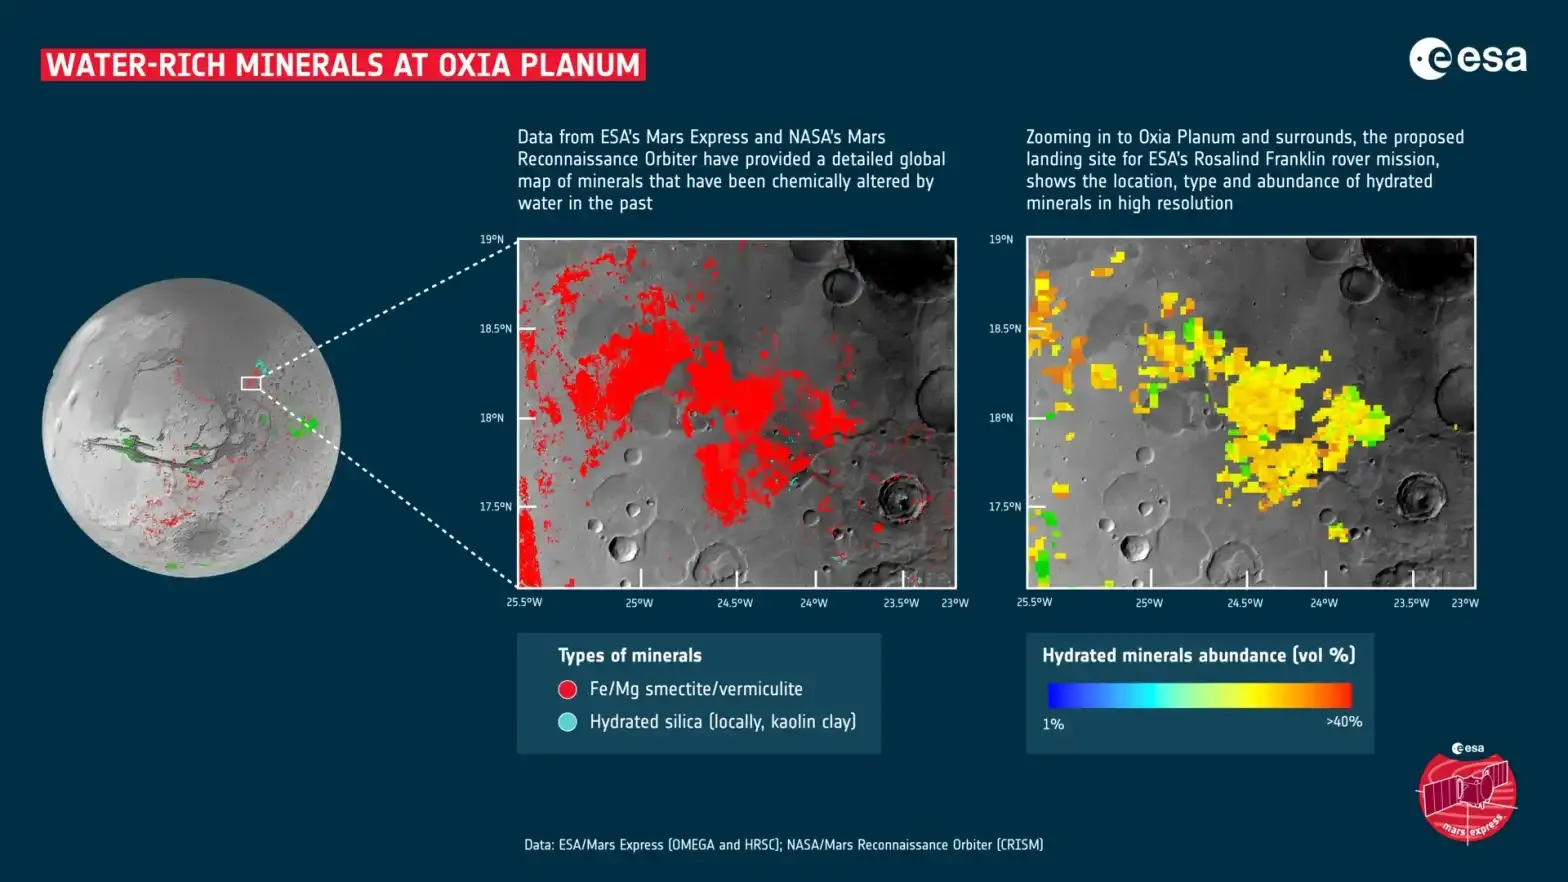 Mapa detallado de minerales hidratados de Oxia Planum. Muestra abundante de esmectita/vermiculita Fe/Mg de color rojo y sílice hidratada de color celeste. (foto: ESA)